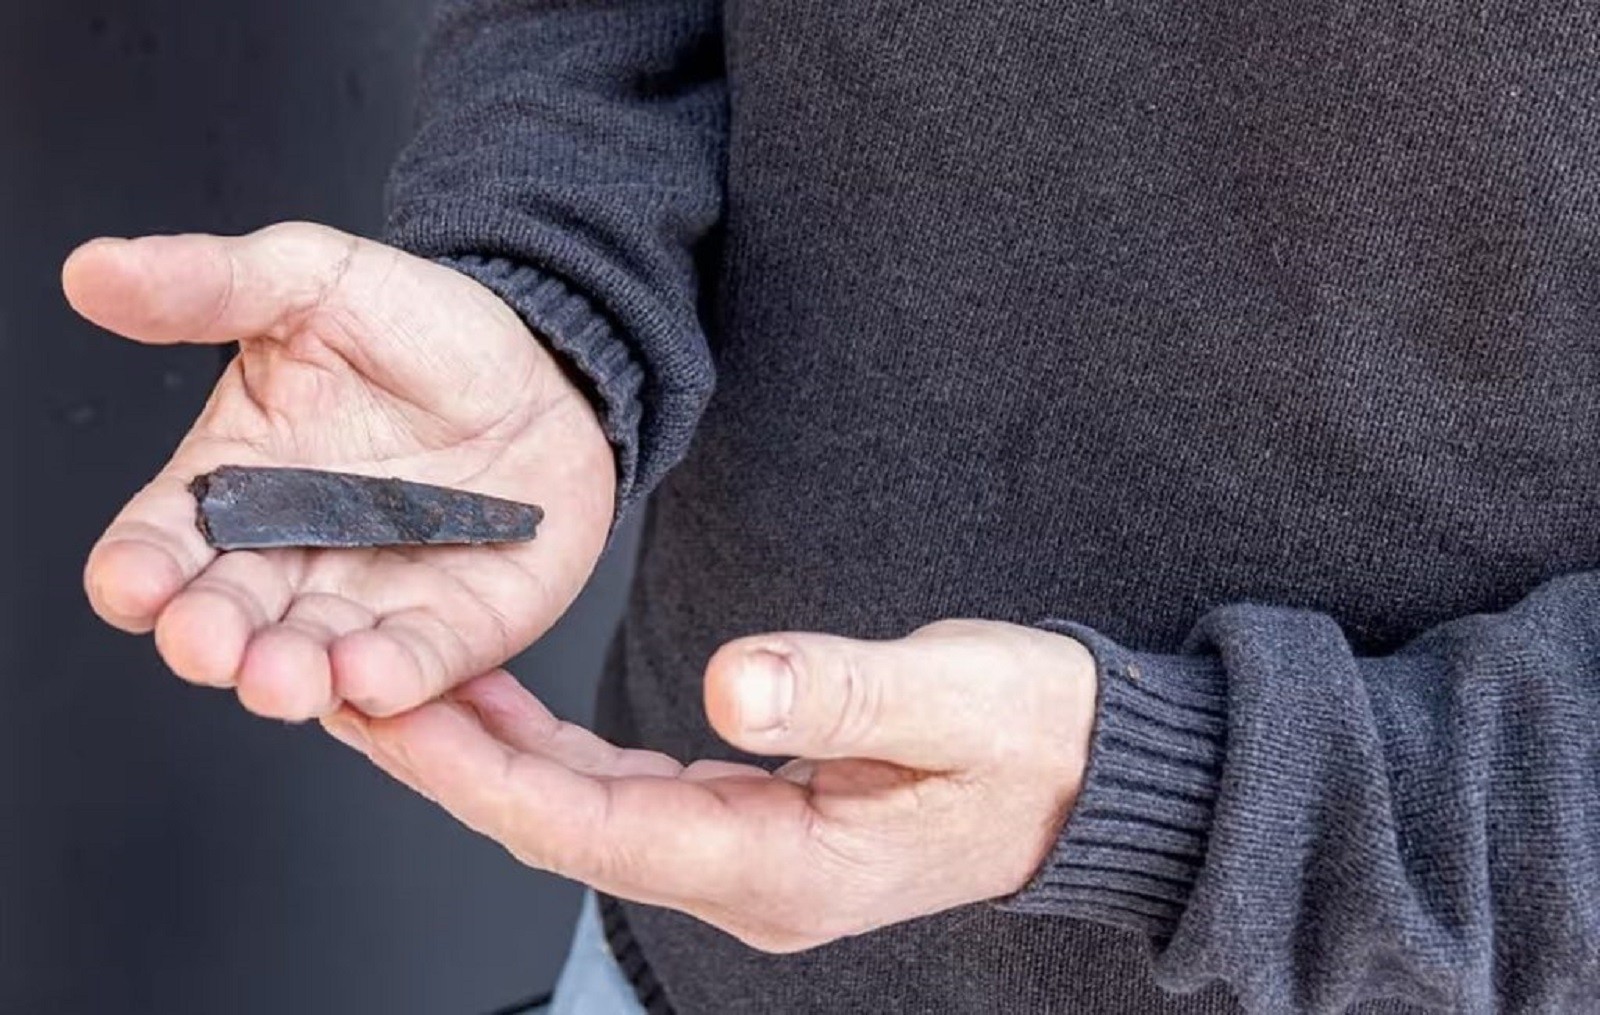 Pradawne runy umieszczone na nożu. Naukowcy badają zagadkowy napis 